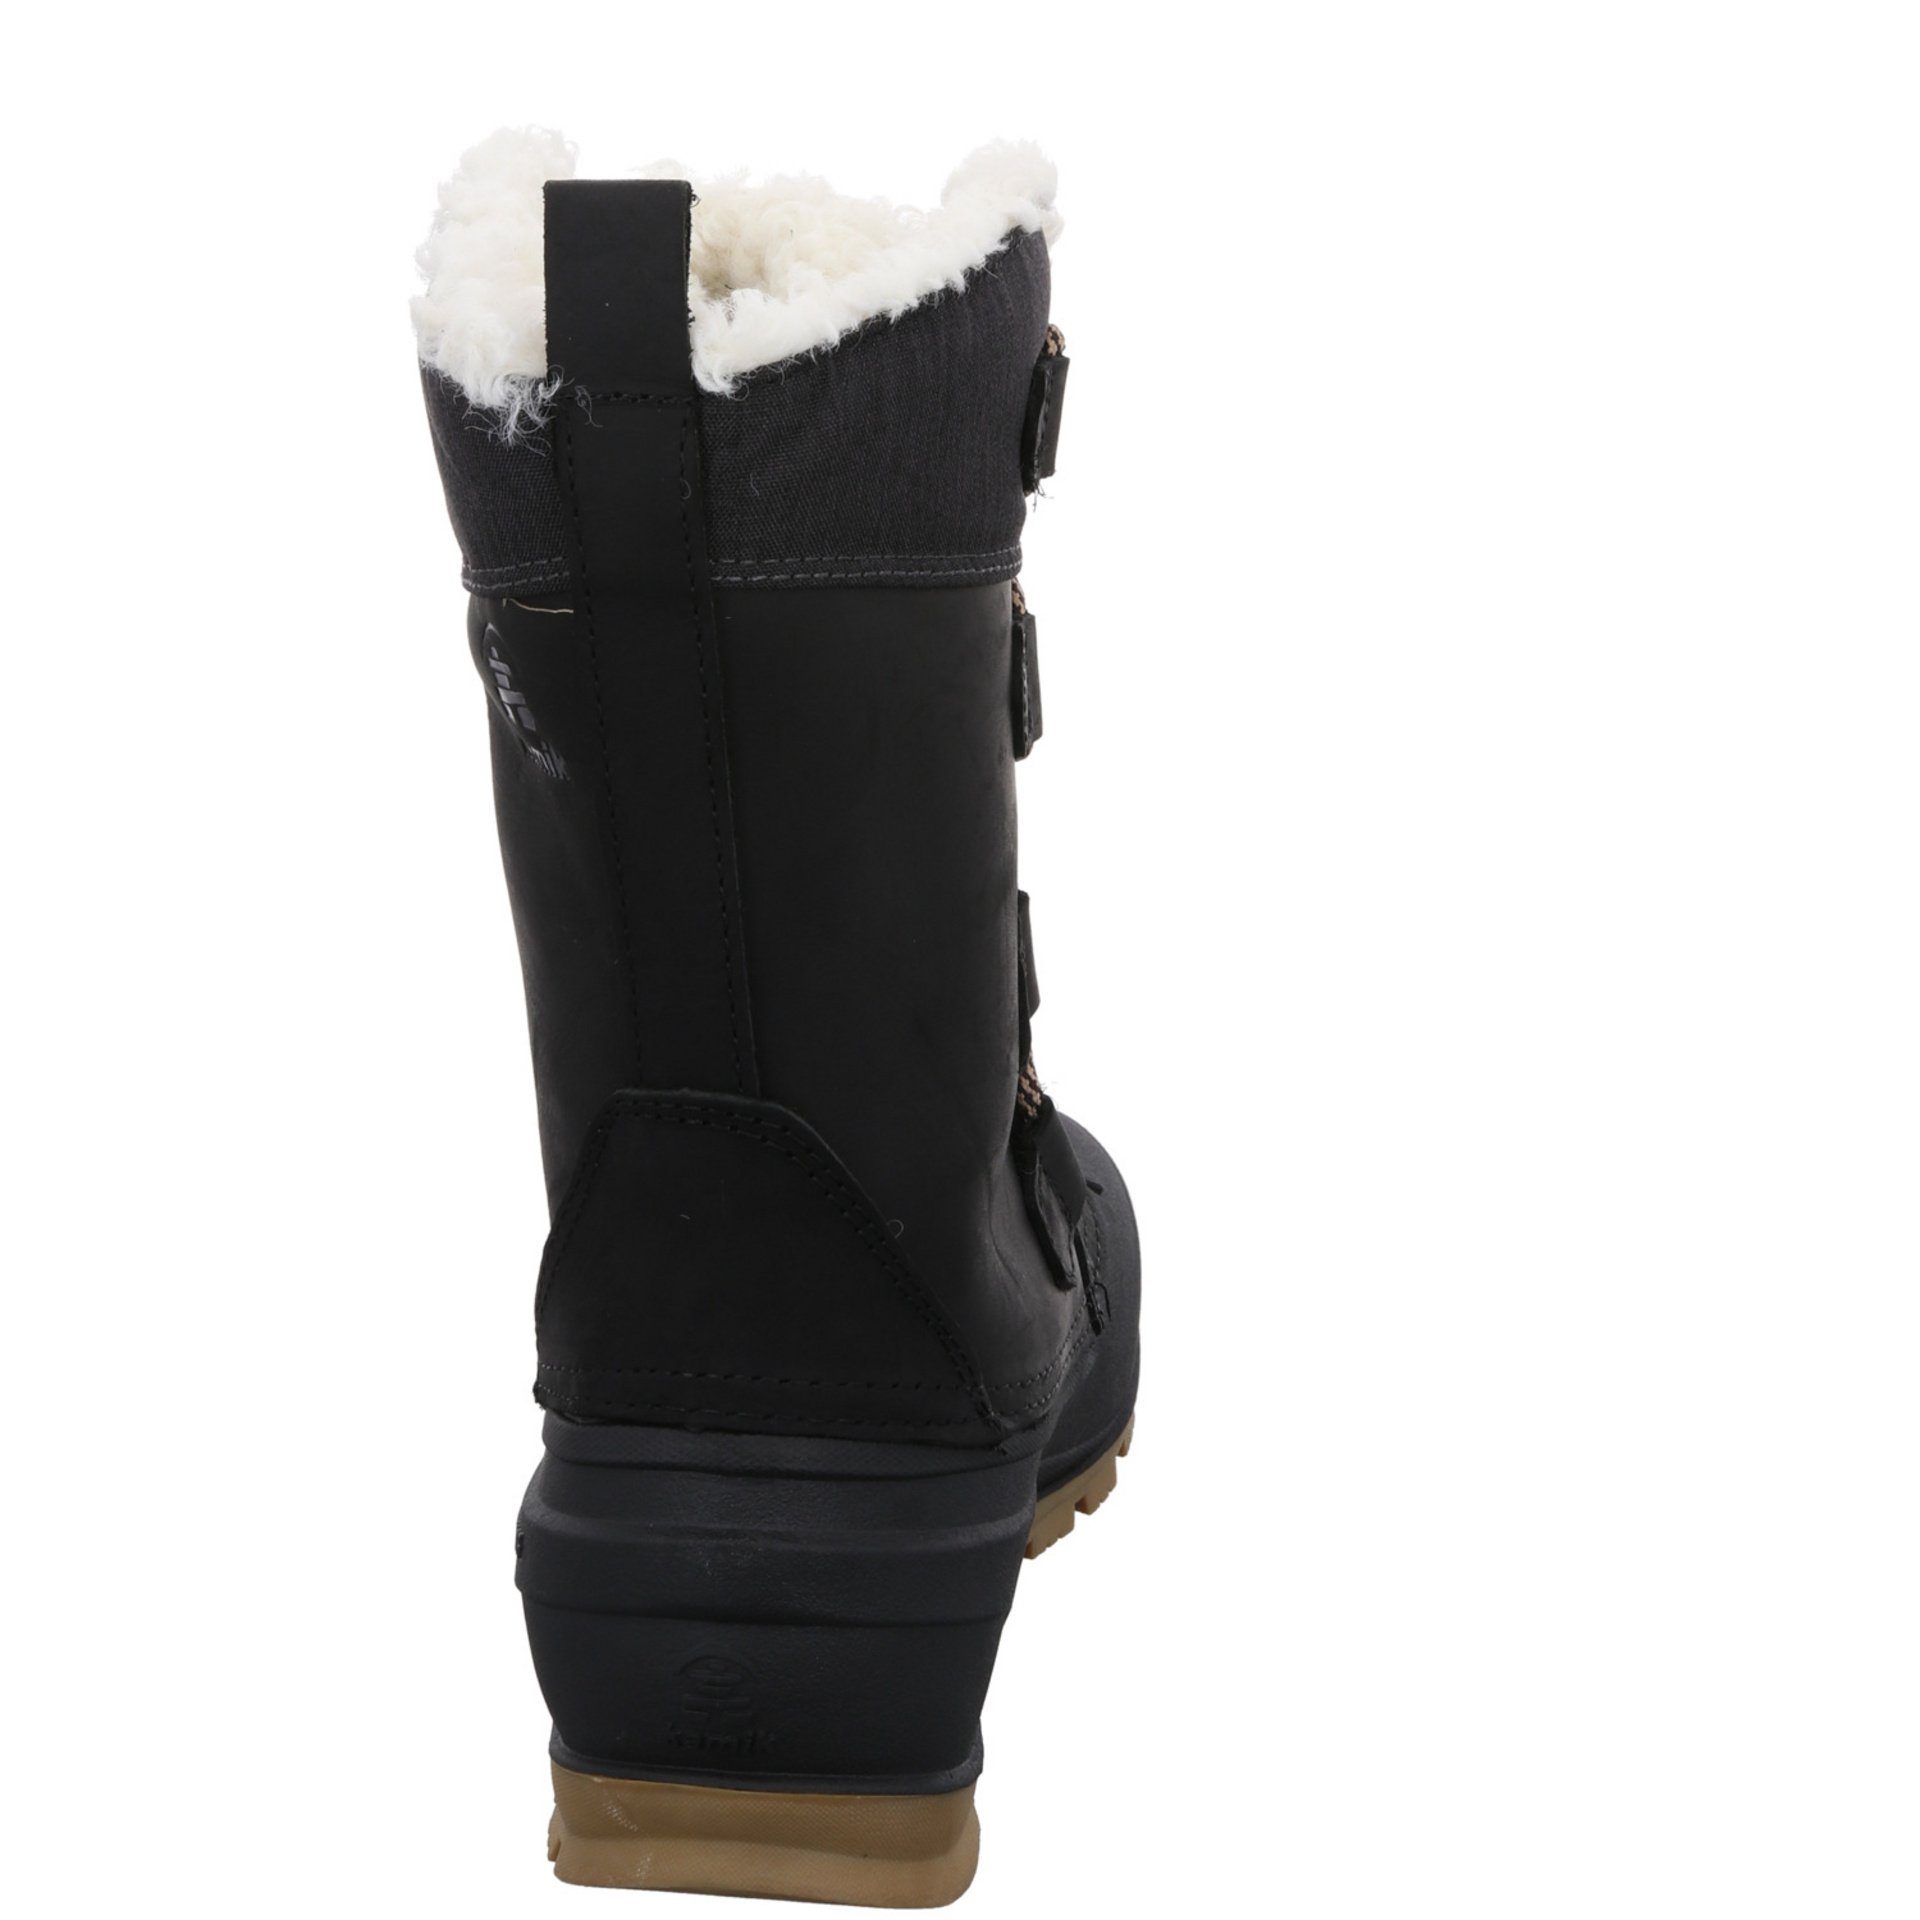 (11910130) Schuhe Snowboots Leder-/Textilkombination Winterstiefel Damen Snowboots Kamik Snowgem Schwarz